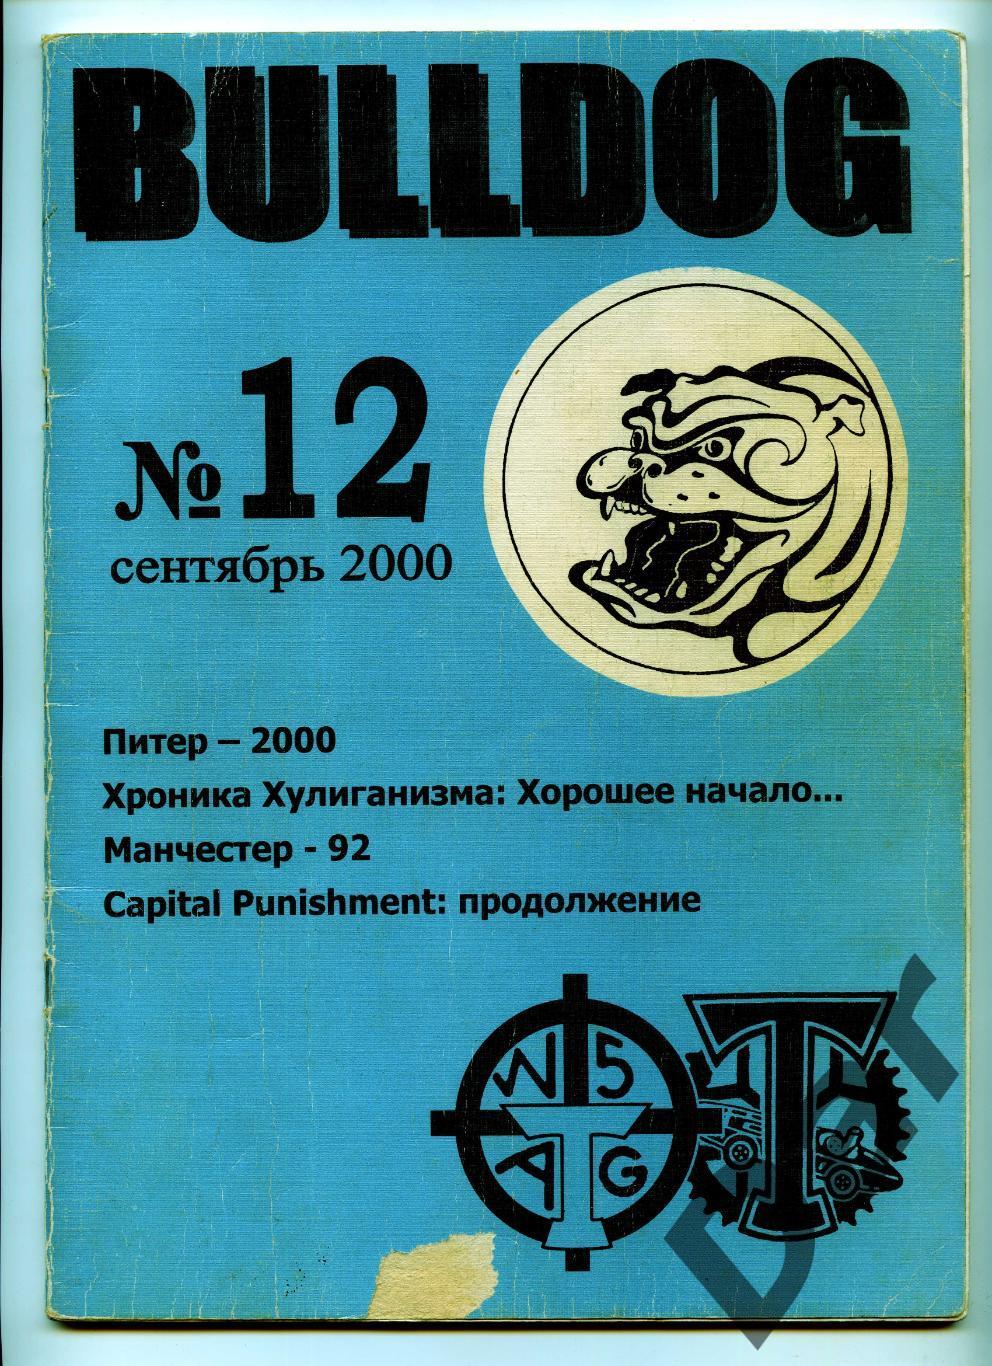 Фанзин фанатов Торпедо Москва Bulldog #12 сентябрь 2000